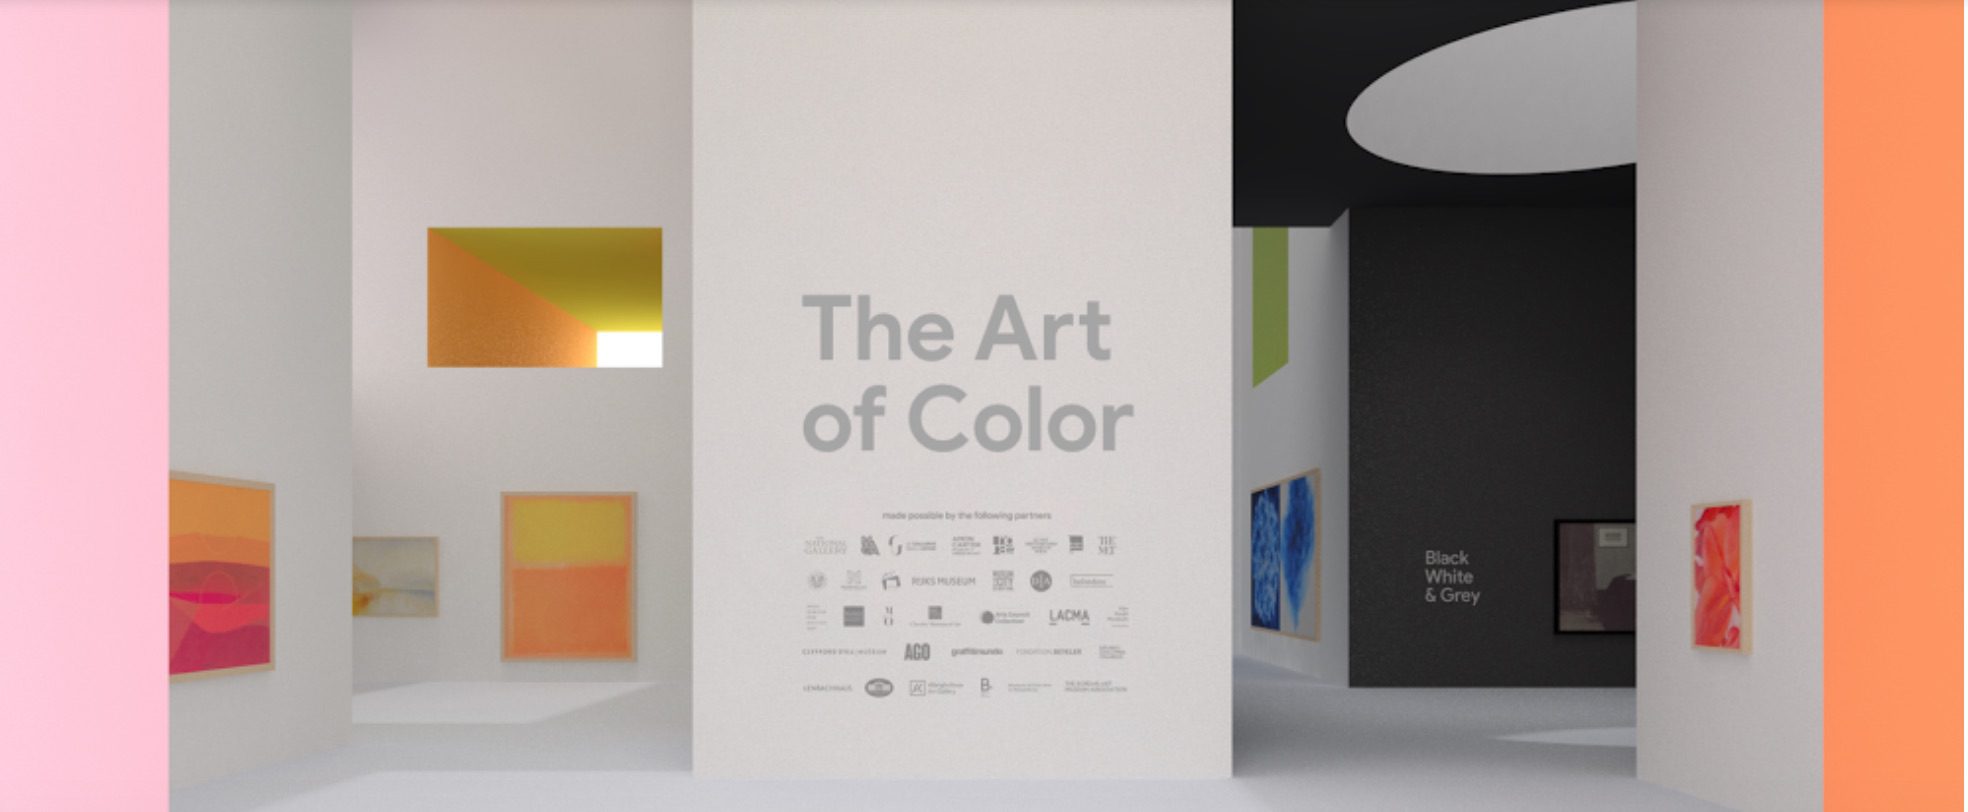 Art of Color ist die neueste Ausstellung in der Pocket Gallery der Google Arts & Culture App